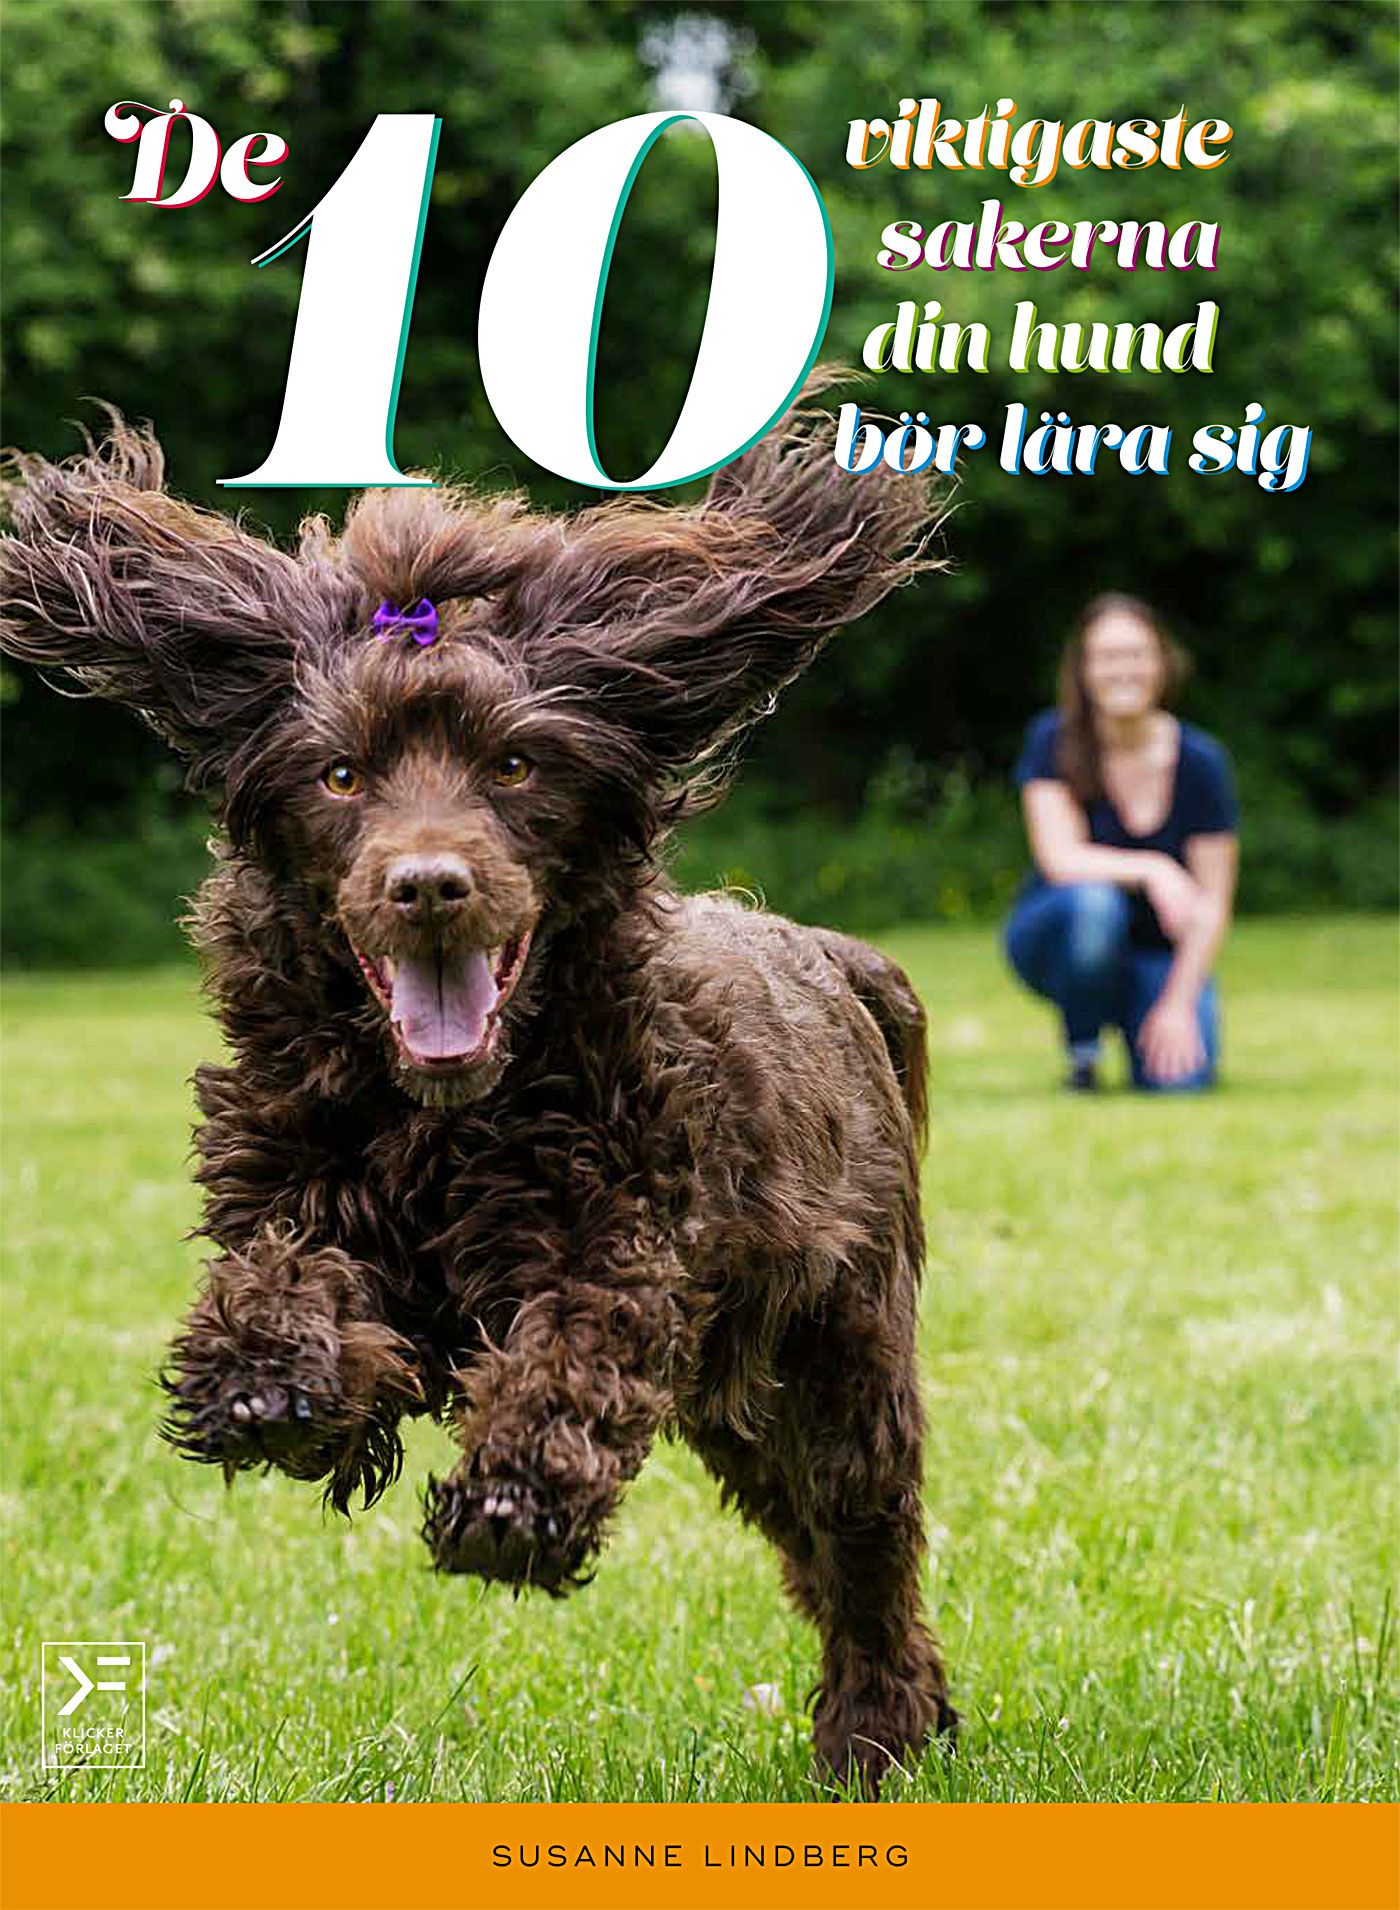 De 10 viktigaste sakerna din hund bör lära sig, e-bog af Susanne Lindberg